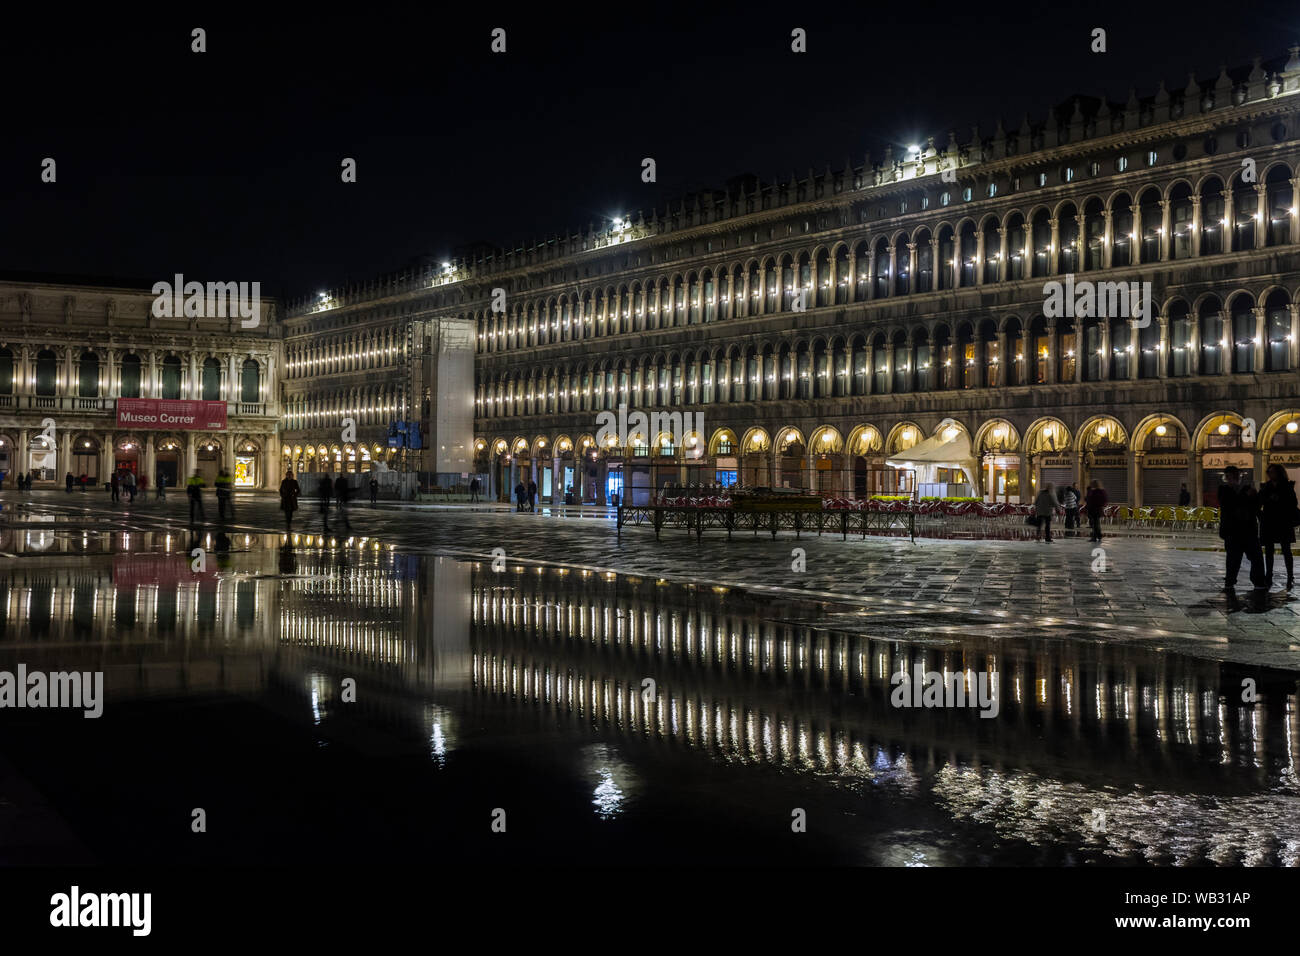 Las Procuratie Vecchie en la Piazza San Marco por la noche, durante una acqua alta (HIGH), caso del agua, la Plaza de San Marcos, en Venecia, Italia Foto de stock